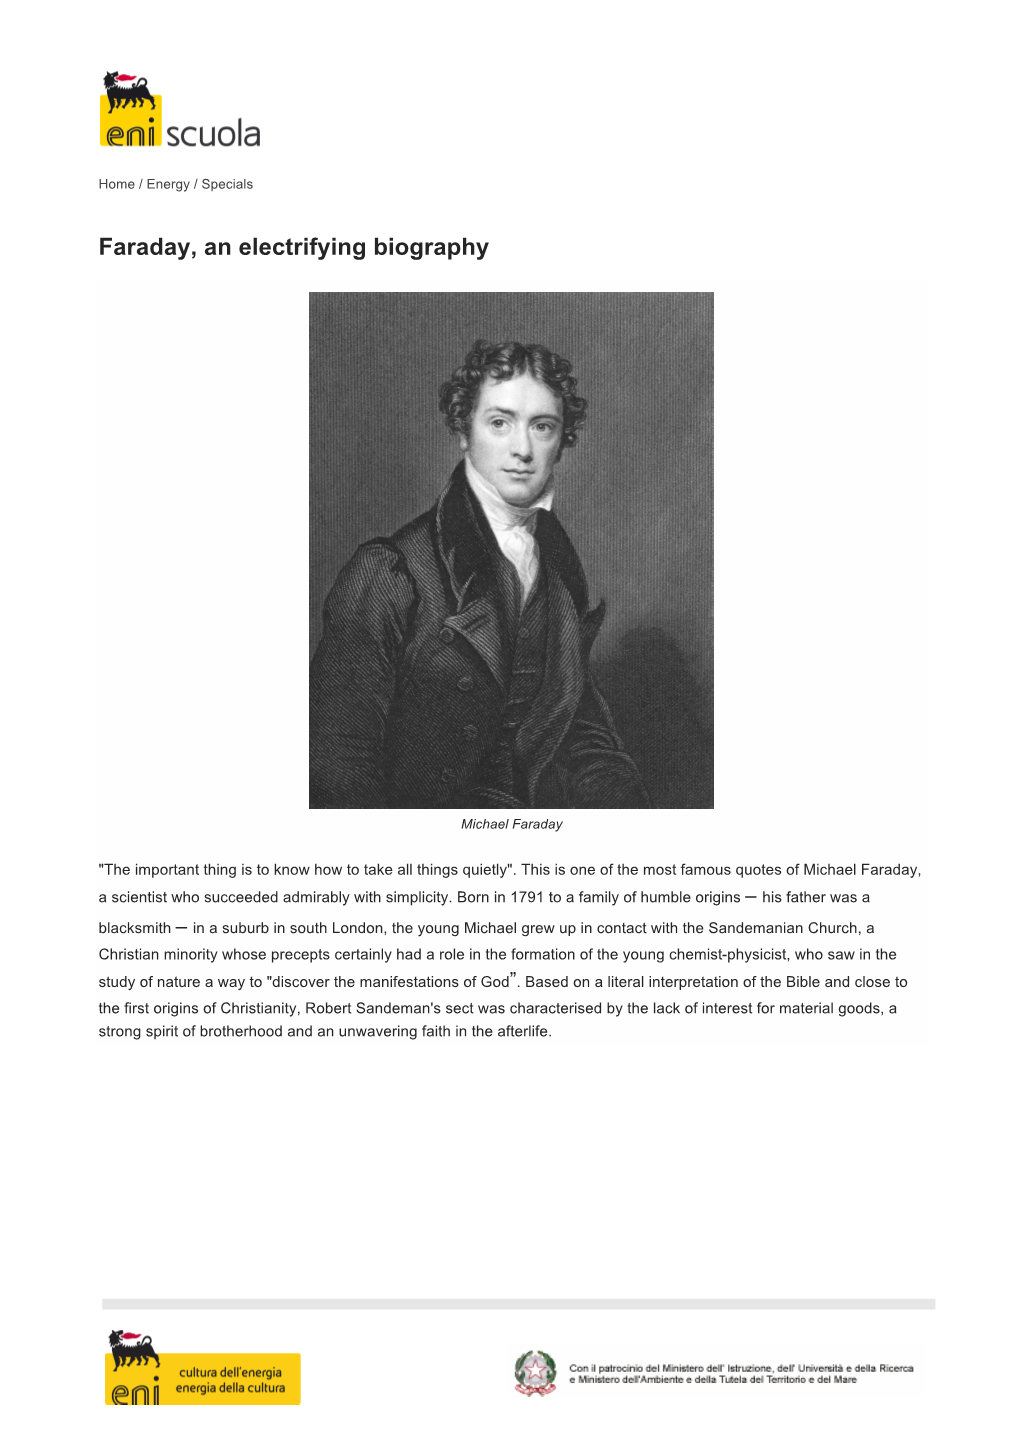 "Faraday, an Electrifying Biography" Pdf File